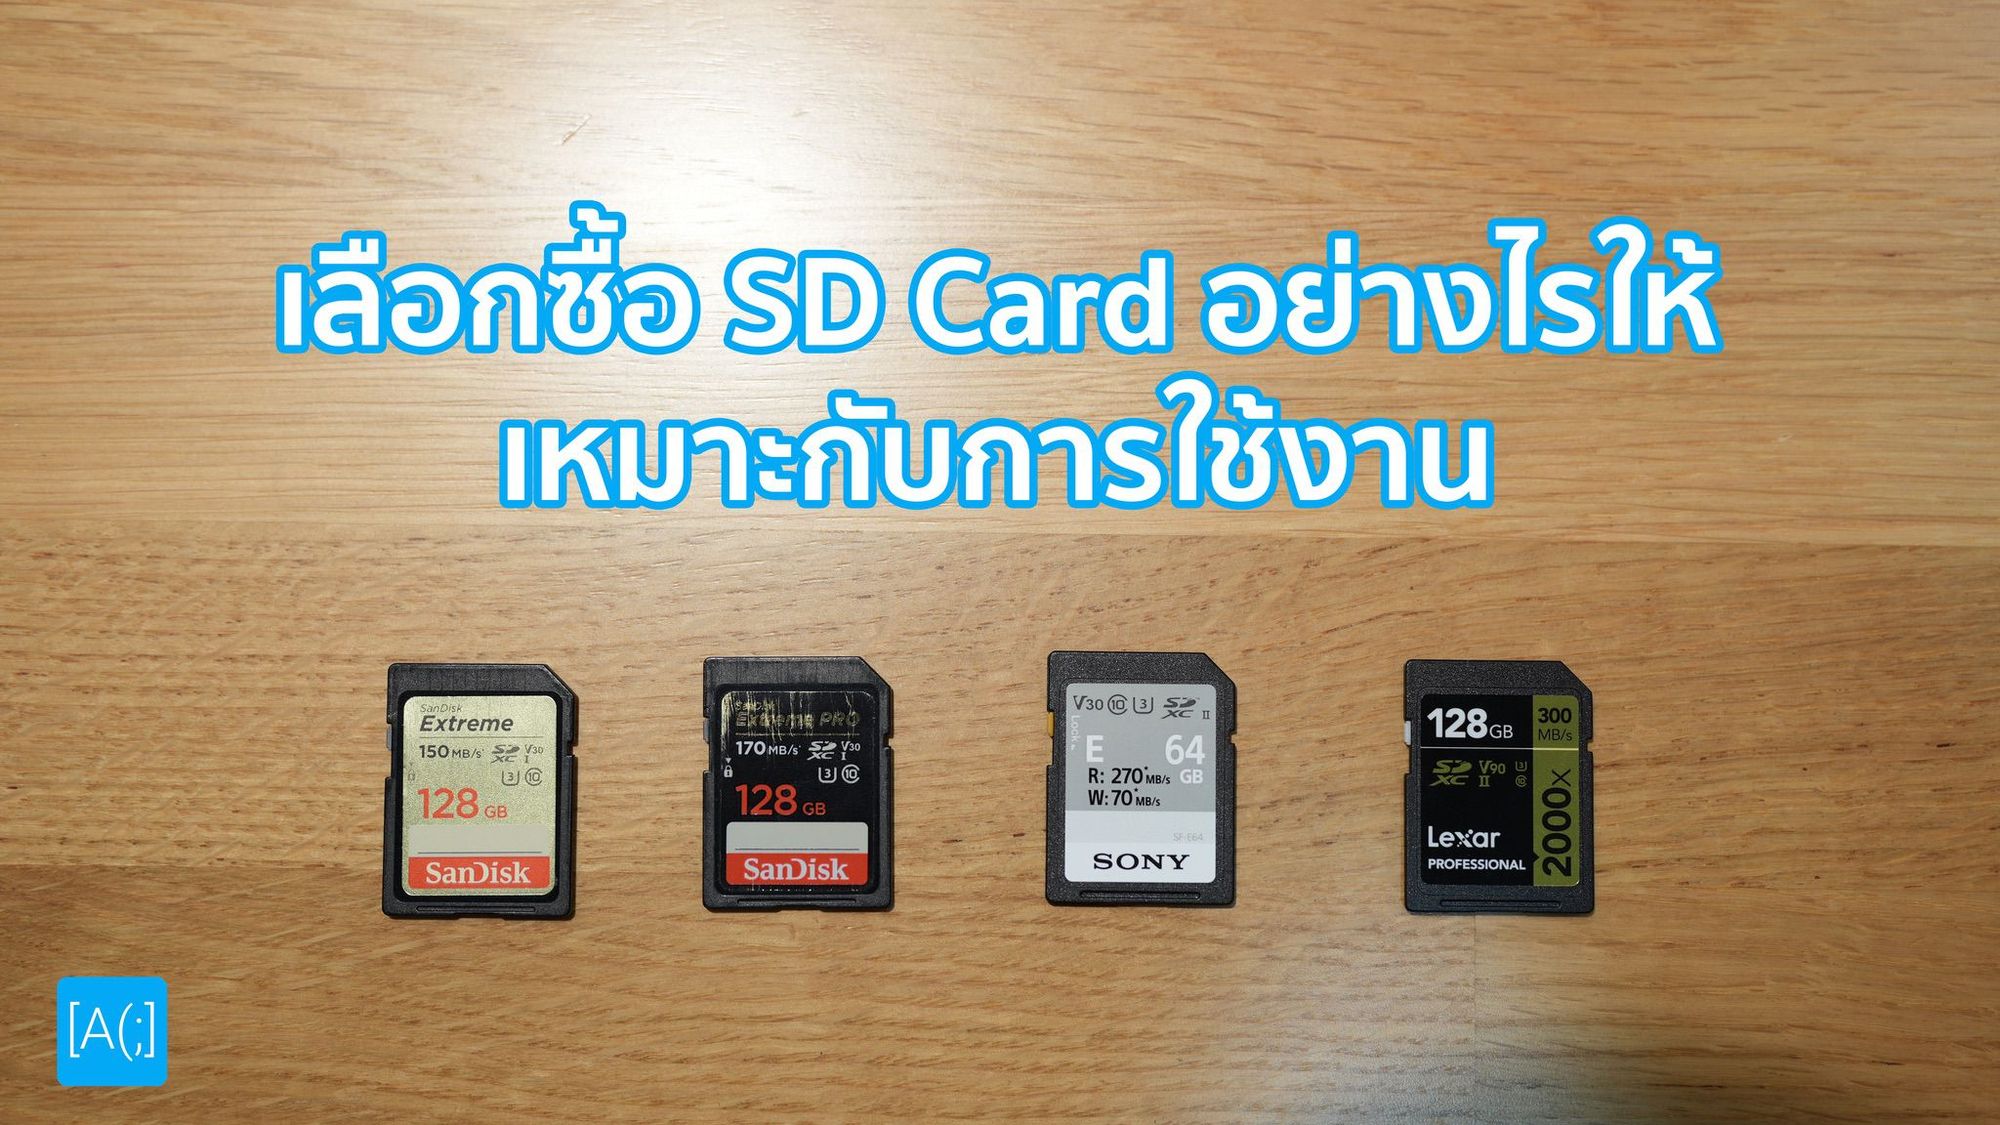 เลือกซื้อ SD Card อย่างไรให้เหมาะกับการใช้งาน